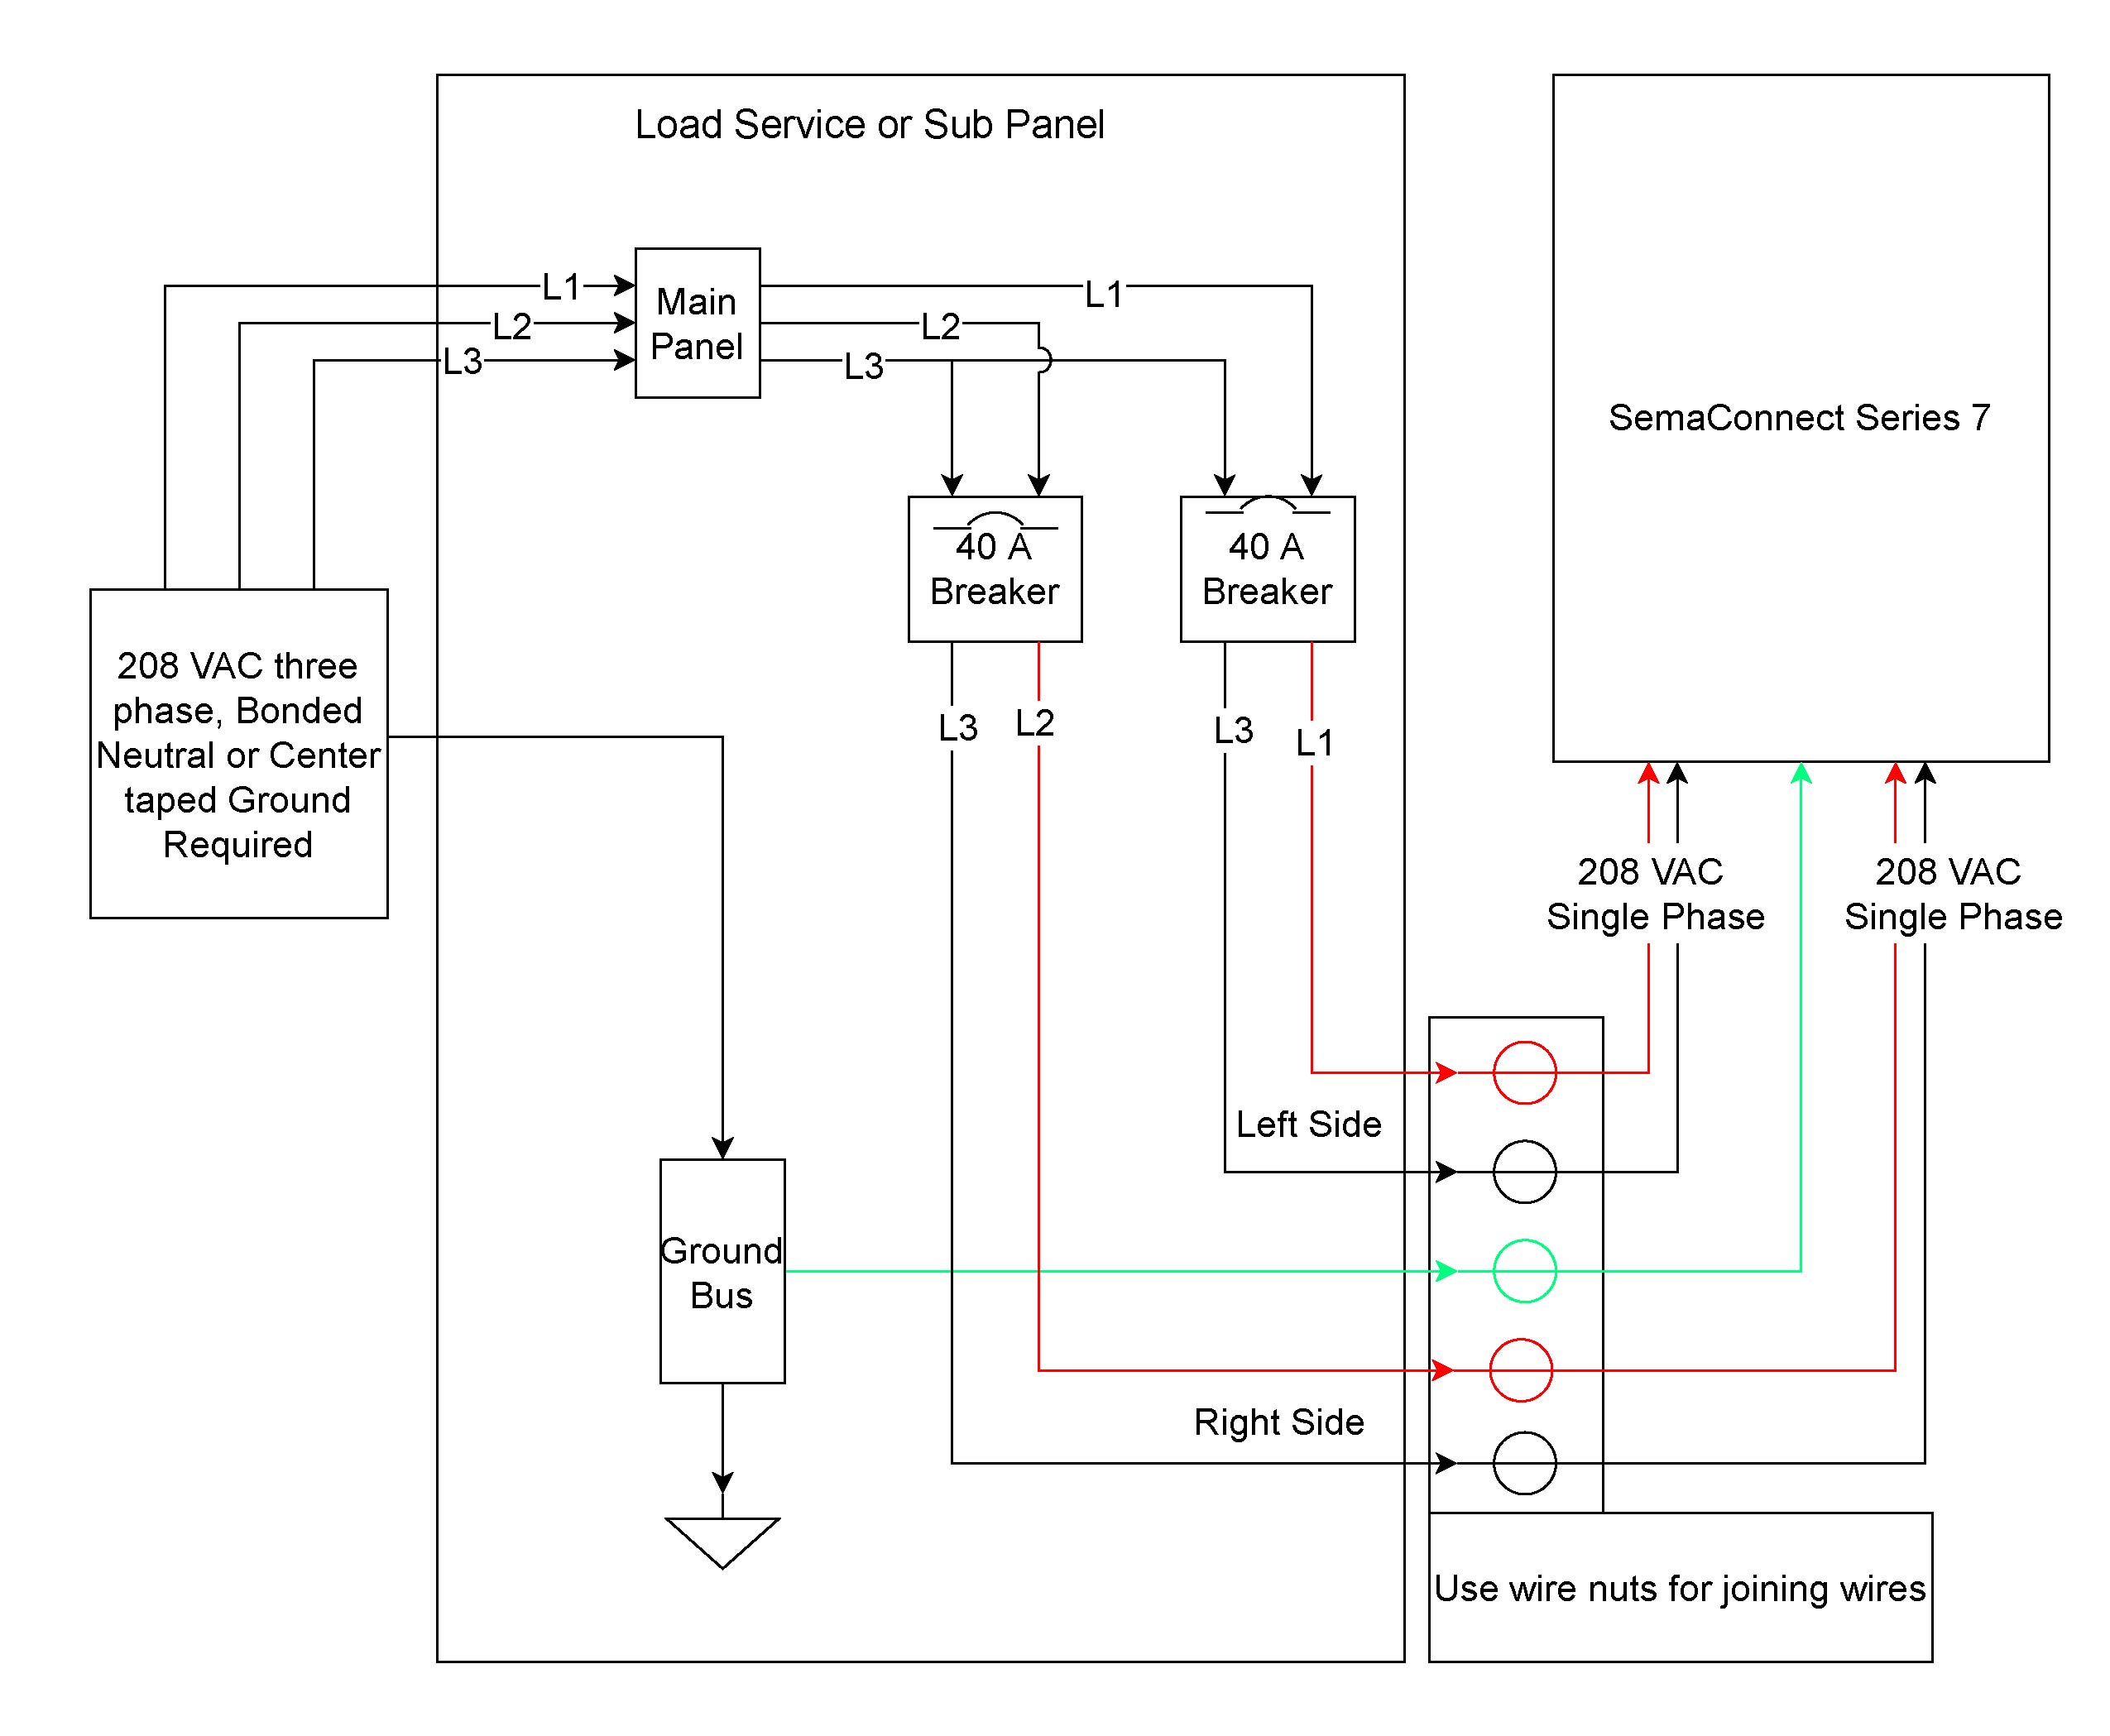 fender squier p bass wiring diagram